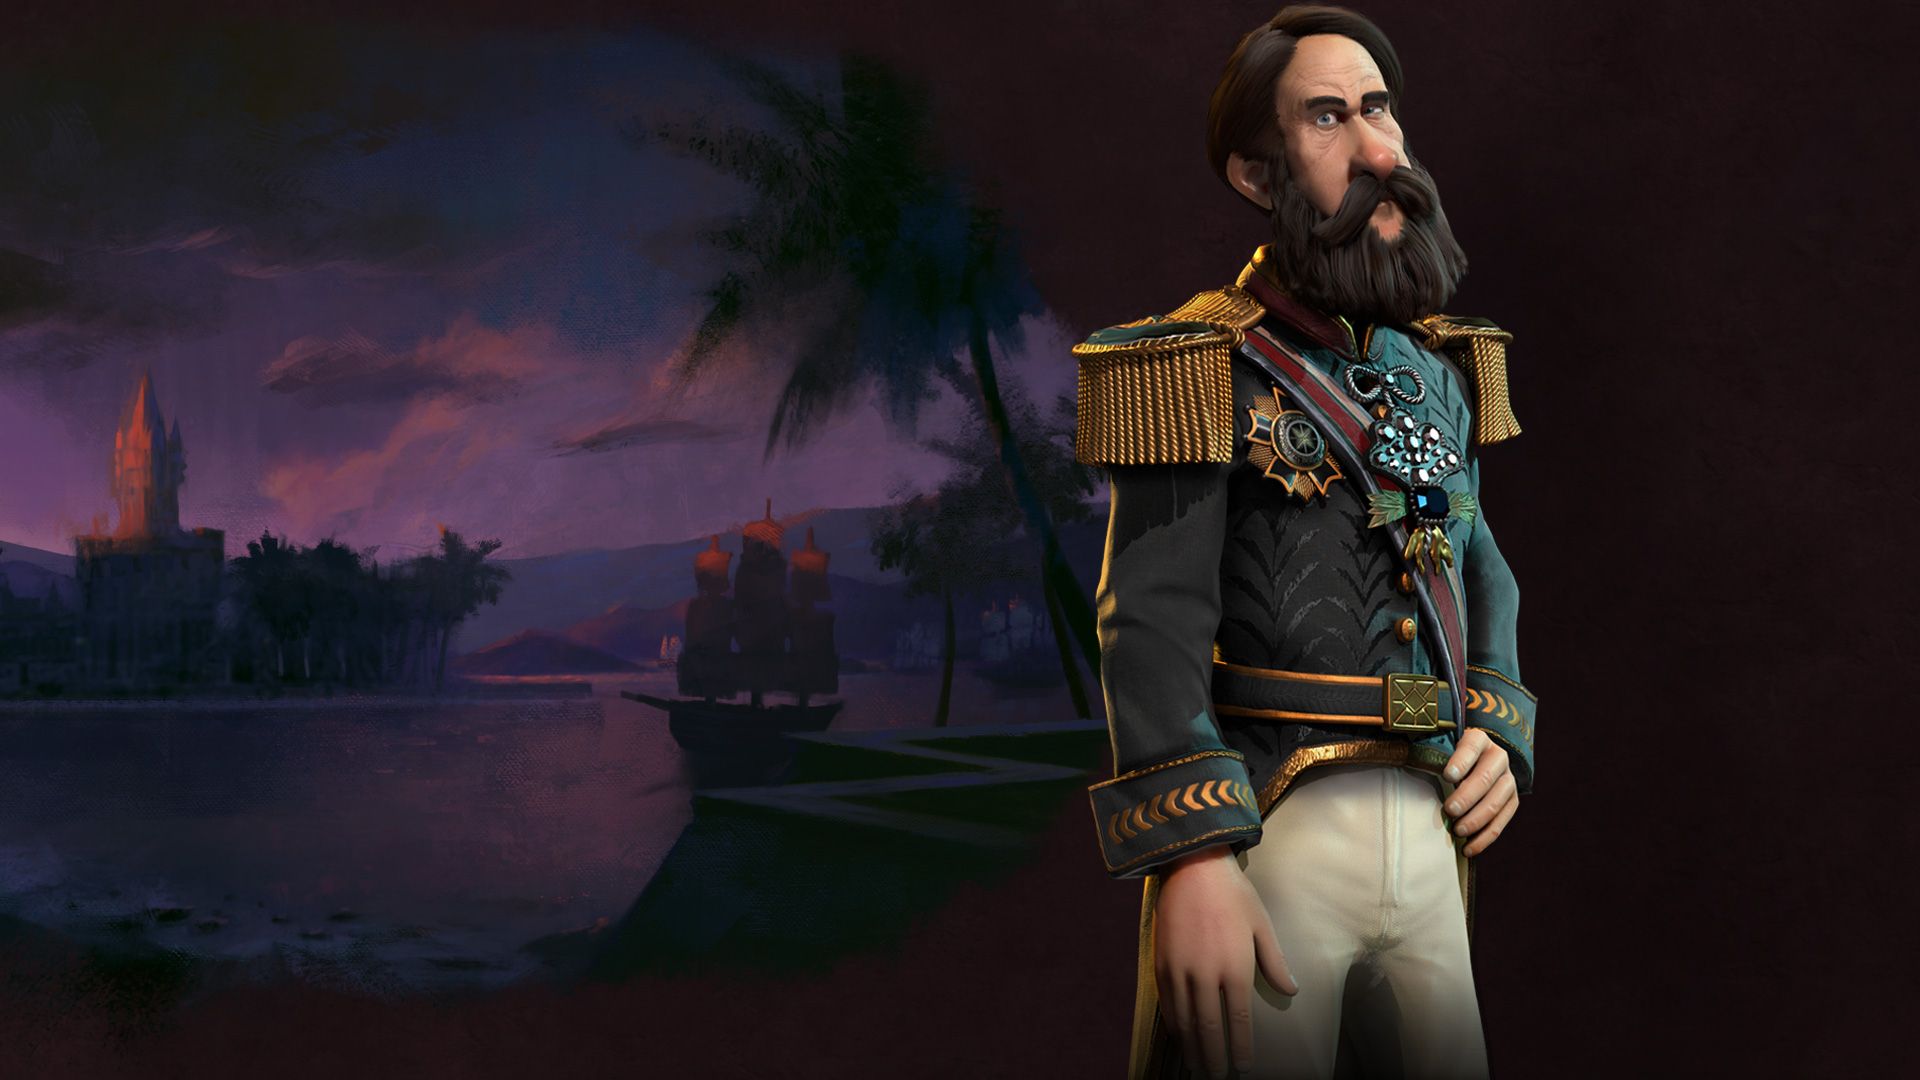 El nuevo juego incluye personajes históricos muy famosos como Pedro II